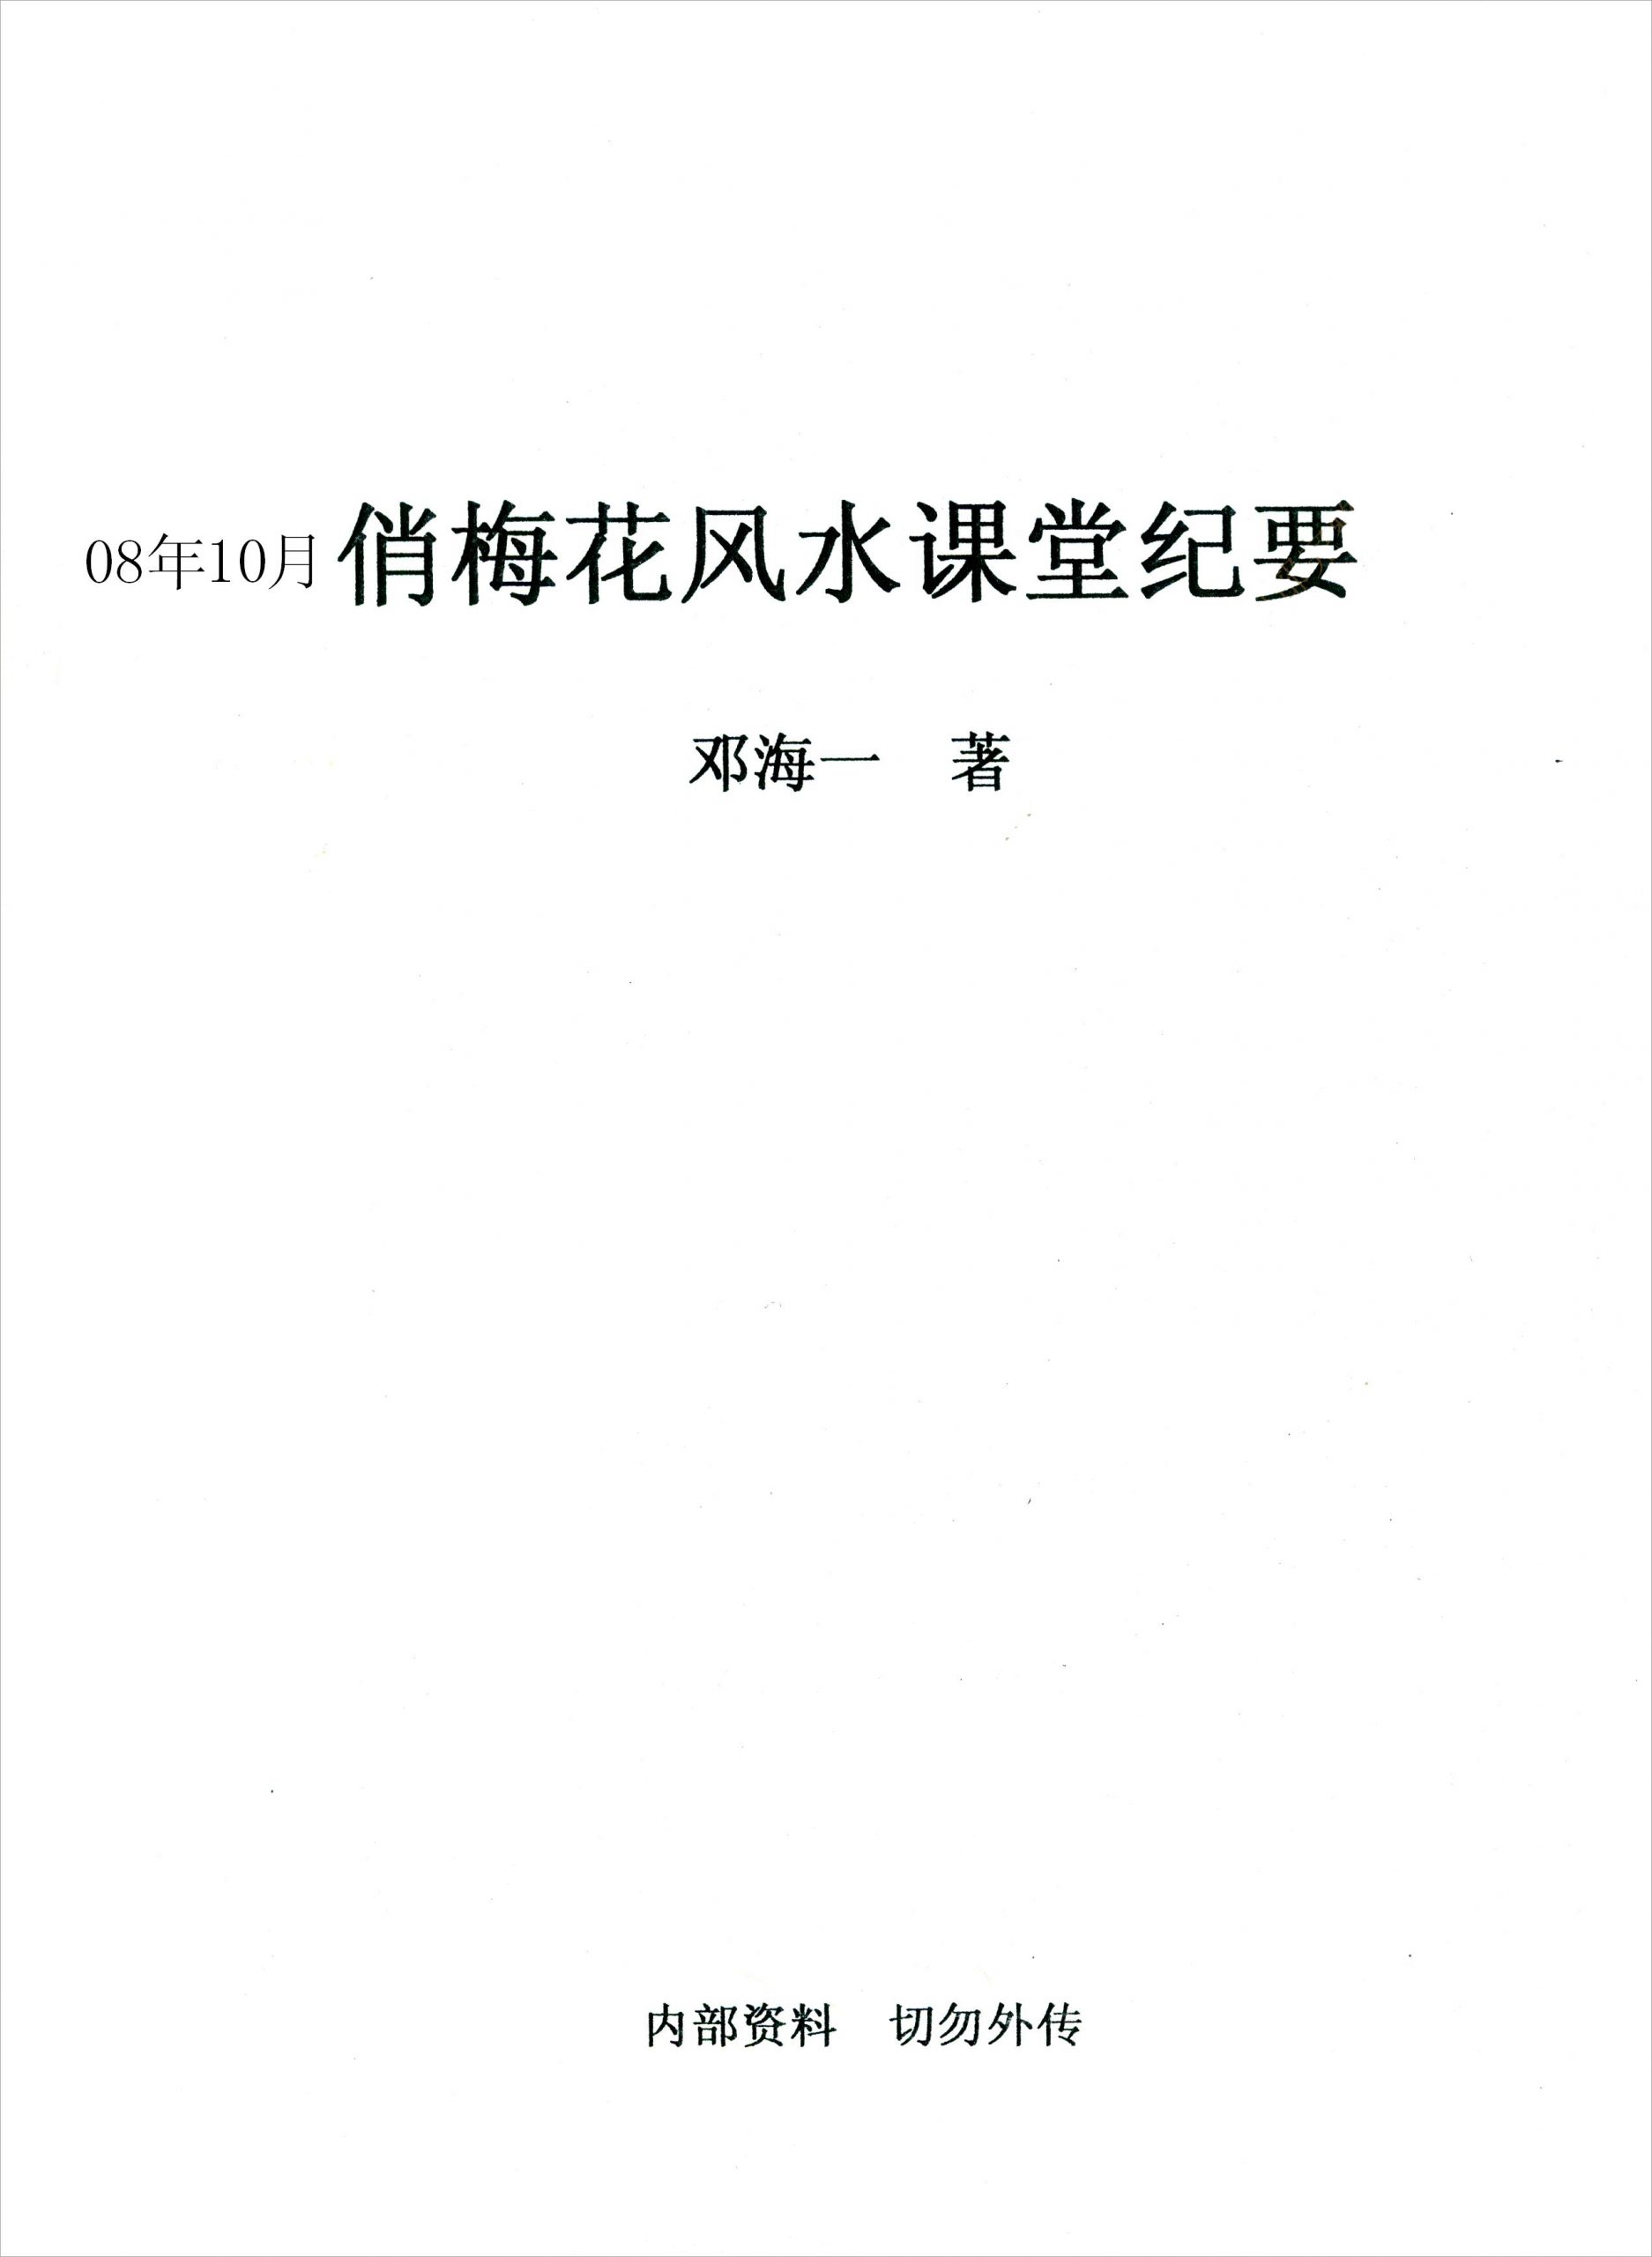 邓海一-俏梅花秘传风水.pdf